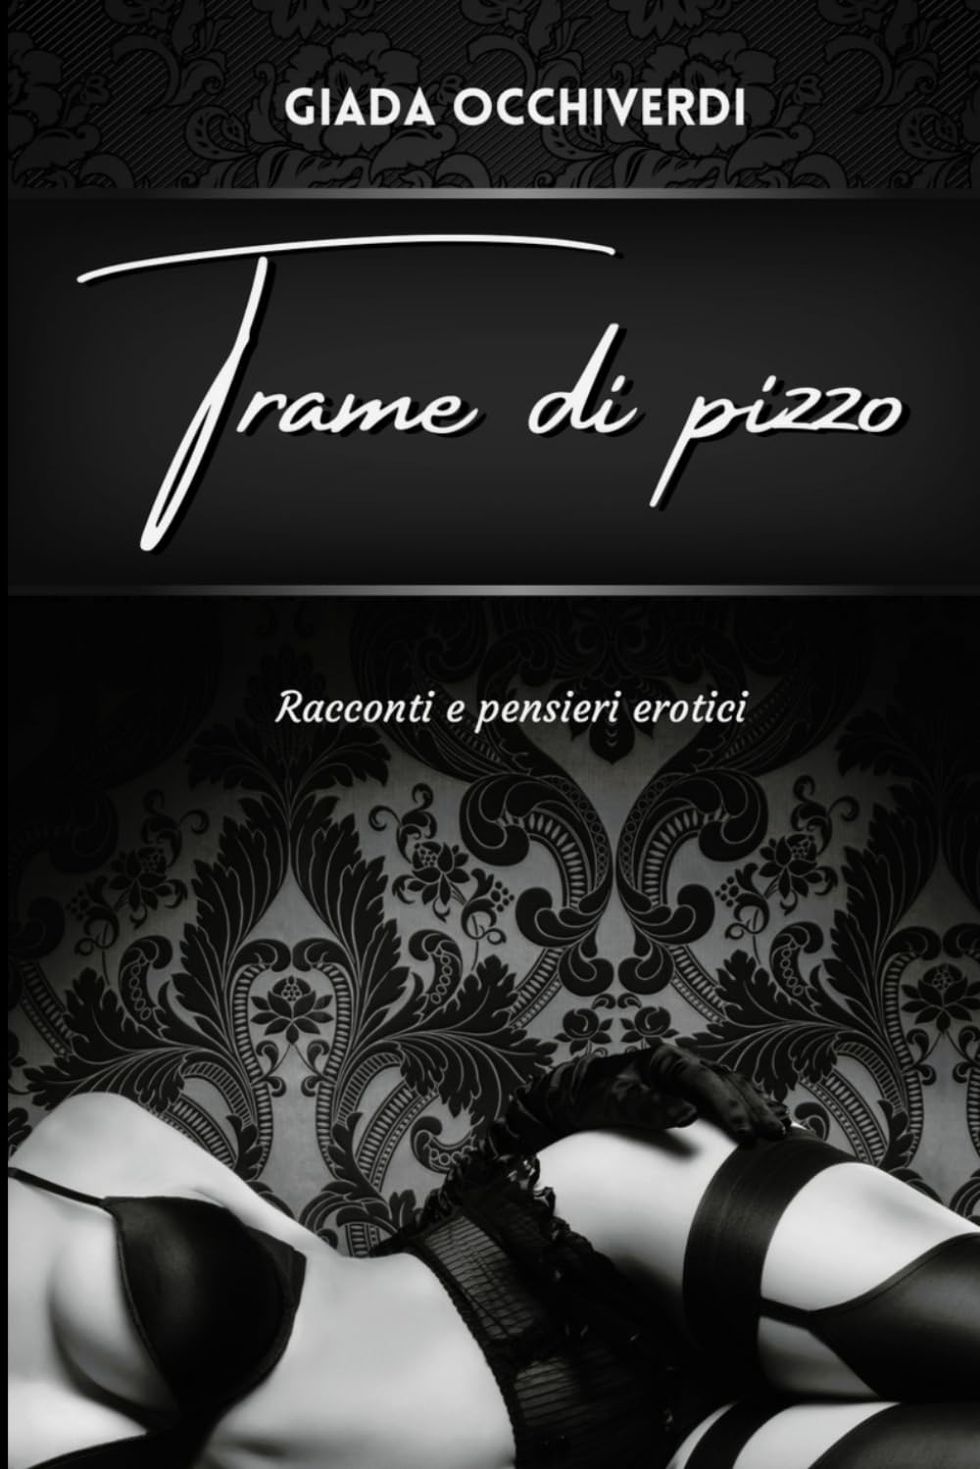 Trame di pizzo - Black edition: racconti e pensieri erotici